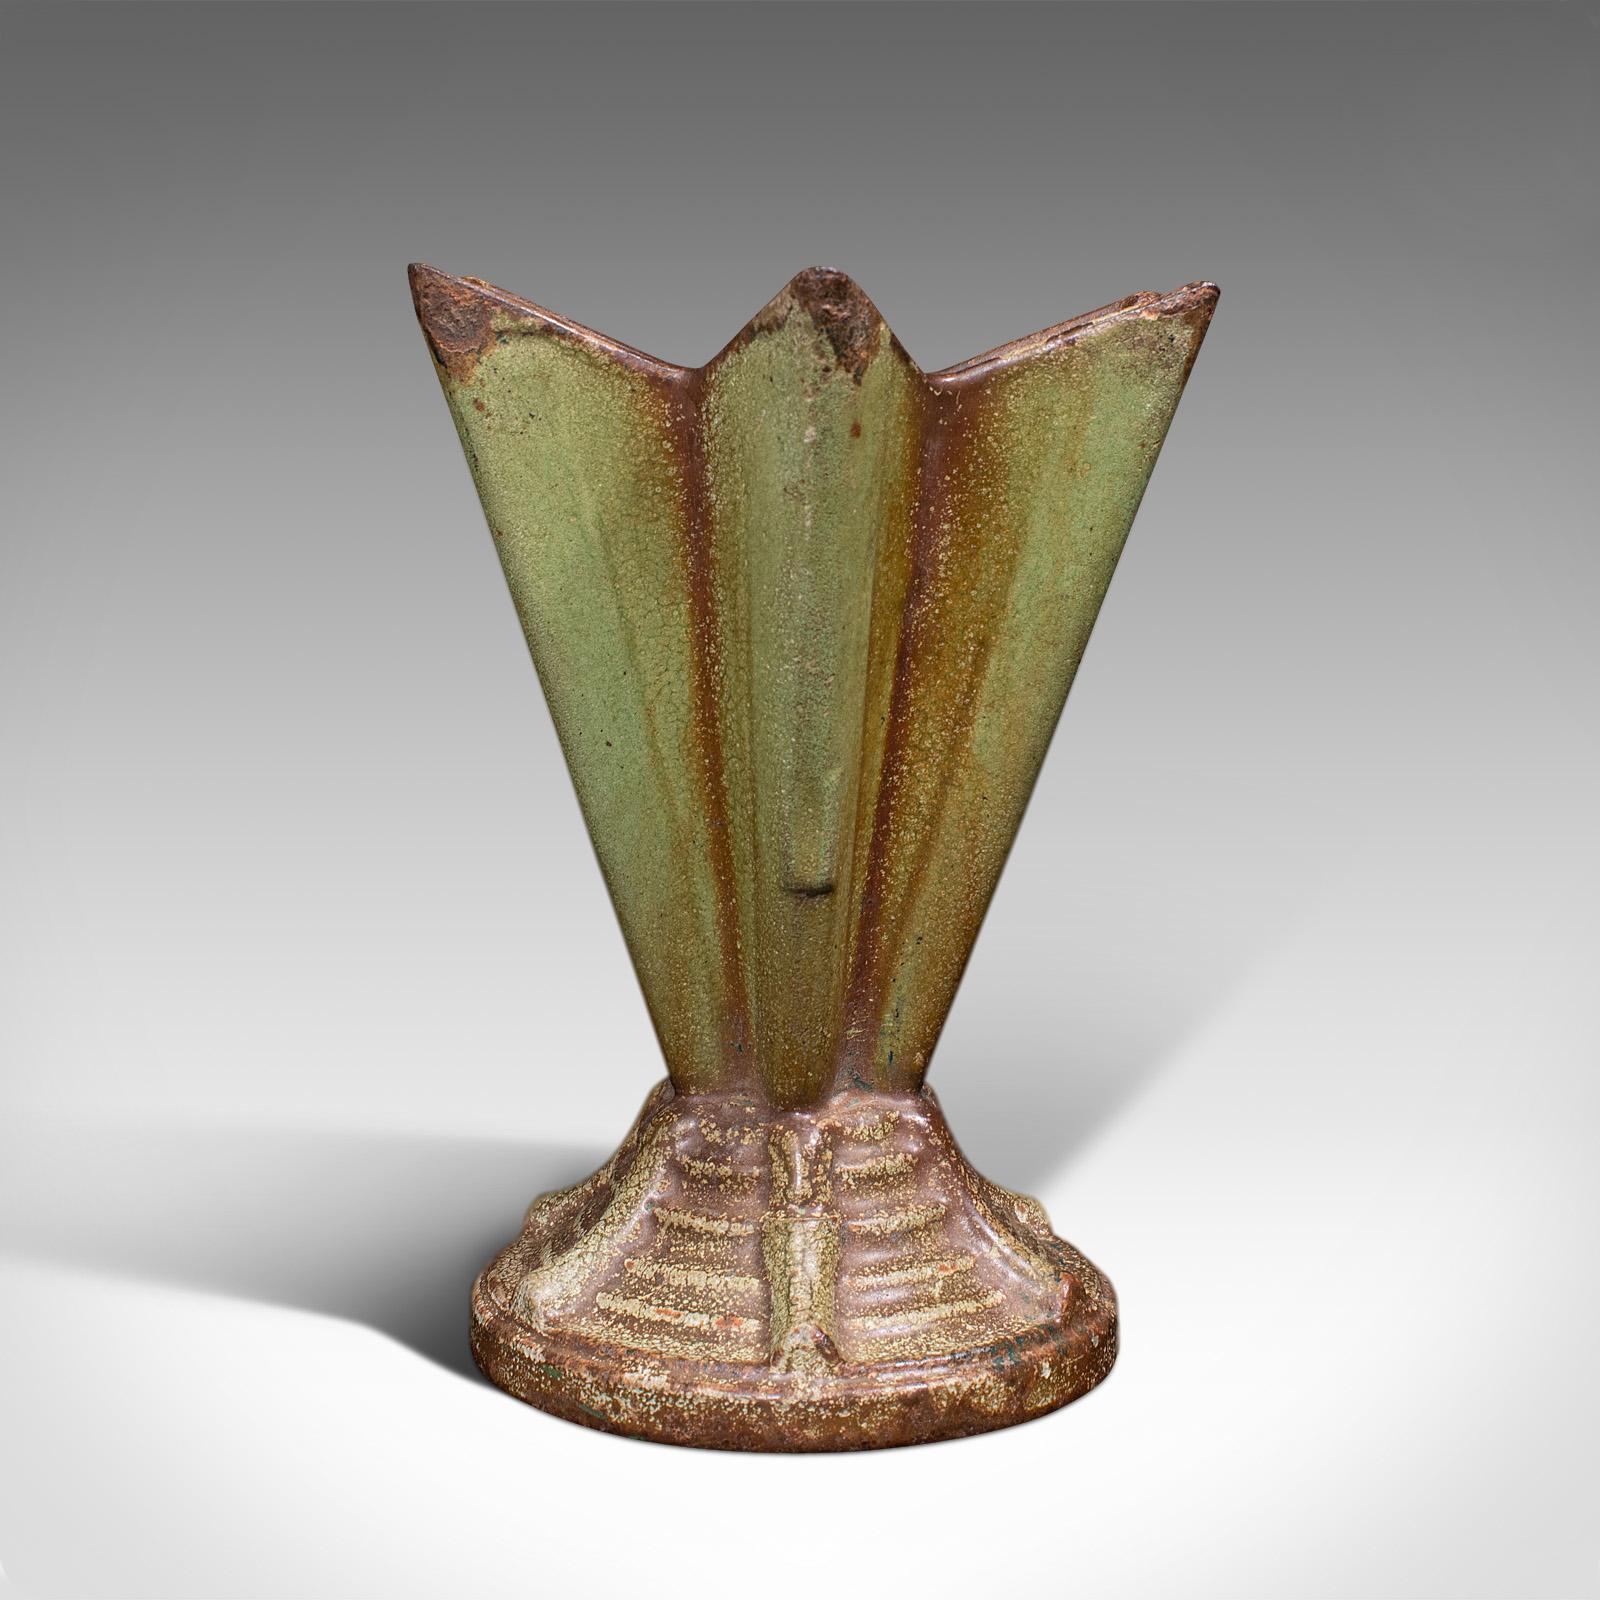 Dies ist ein Vintage Art Deco Display Vase. Ein englischer, gusseiserner Übertopf oder Petite Jardiniere aus dem frühen 20. Jahrhundert, um 1930.

Ausgezeichnete Vase mit sechszackiger Sternform
Zeigt eine wünschenswerte gealterte Patina